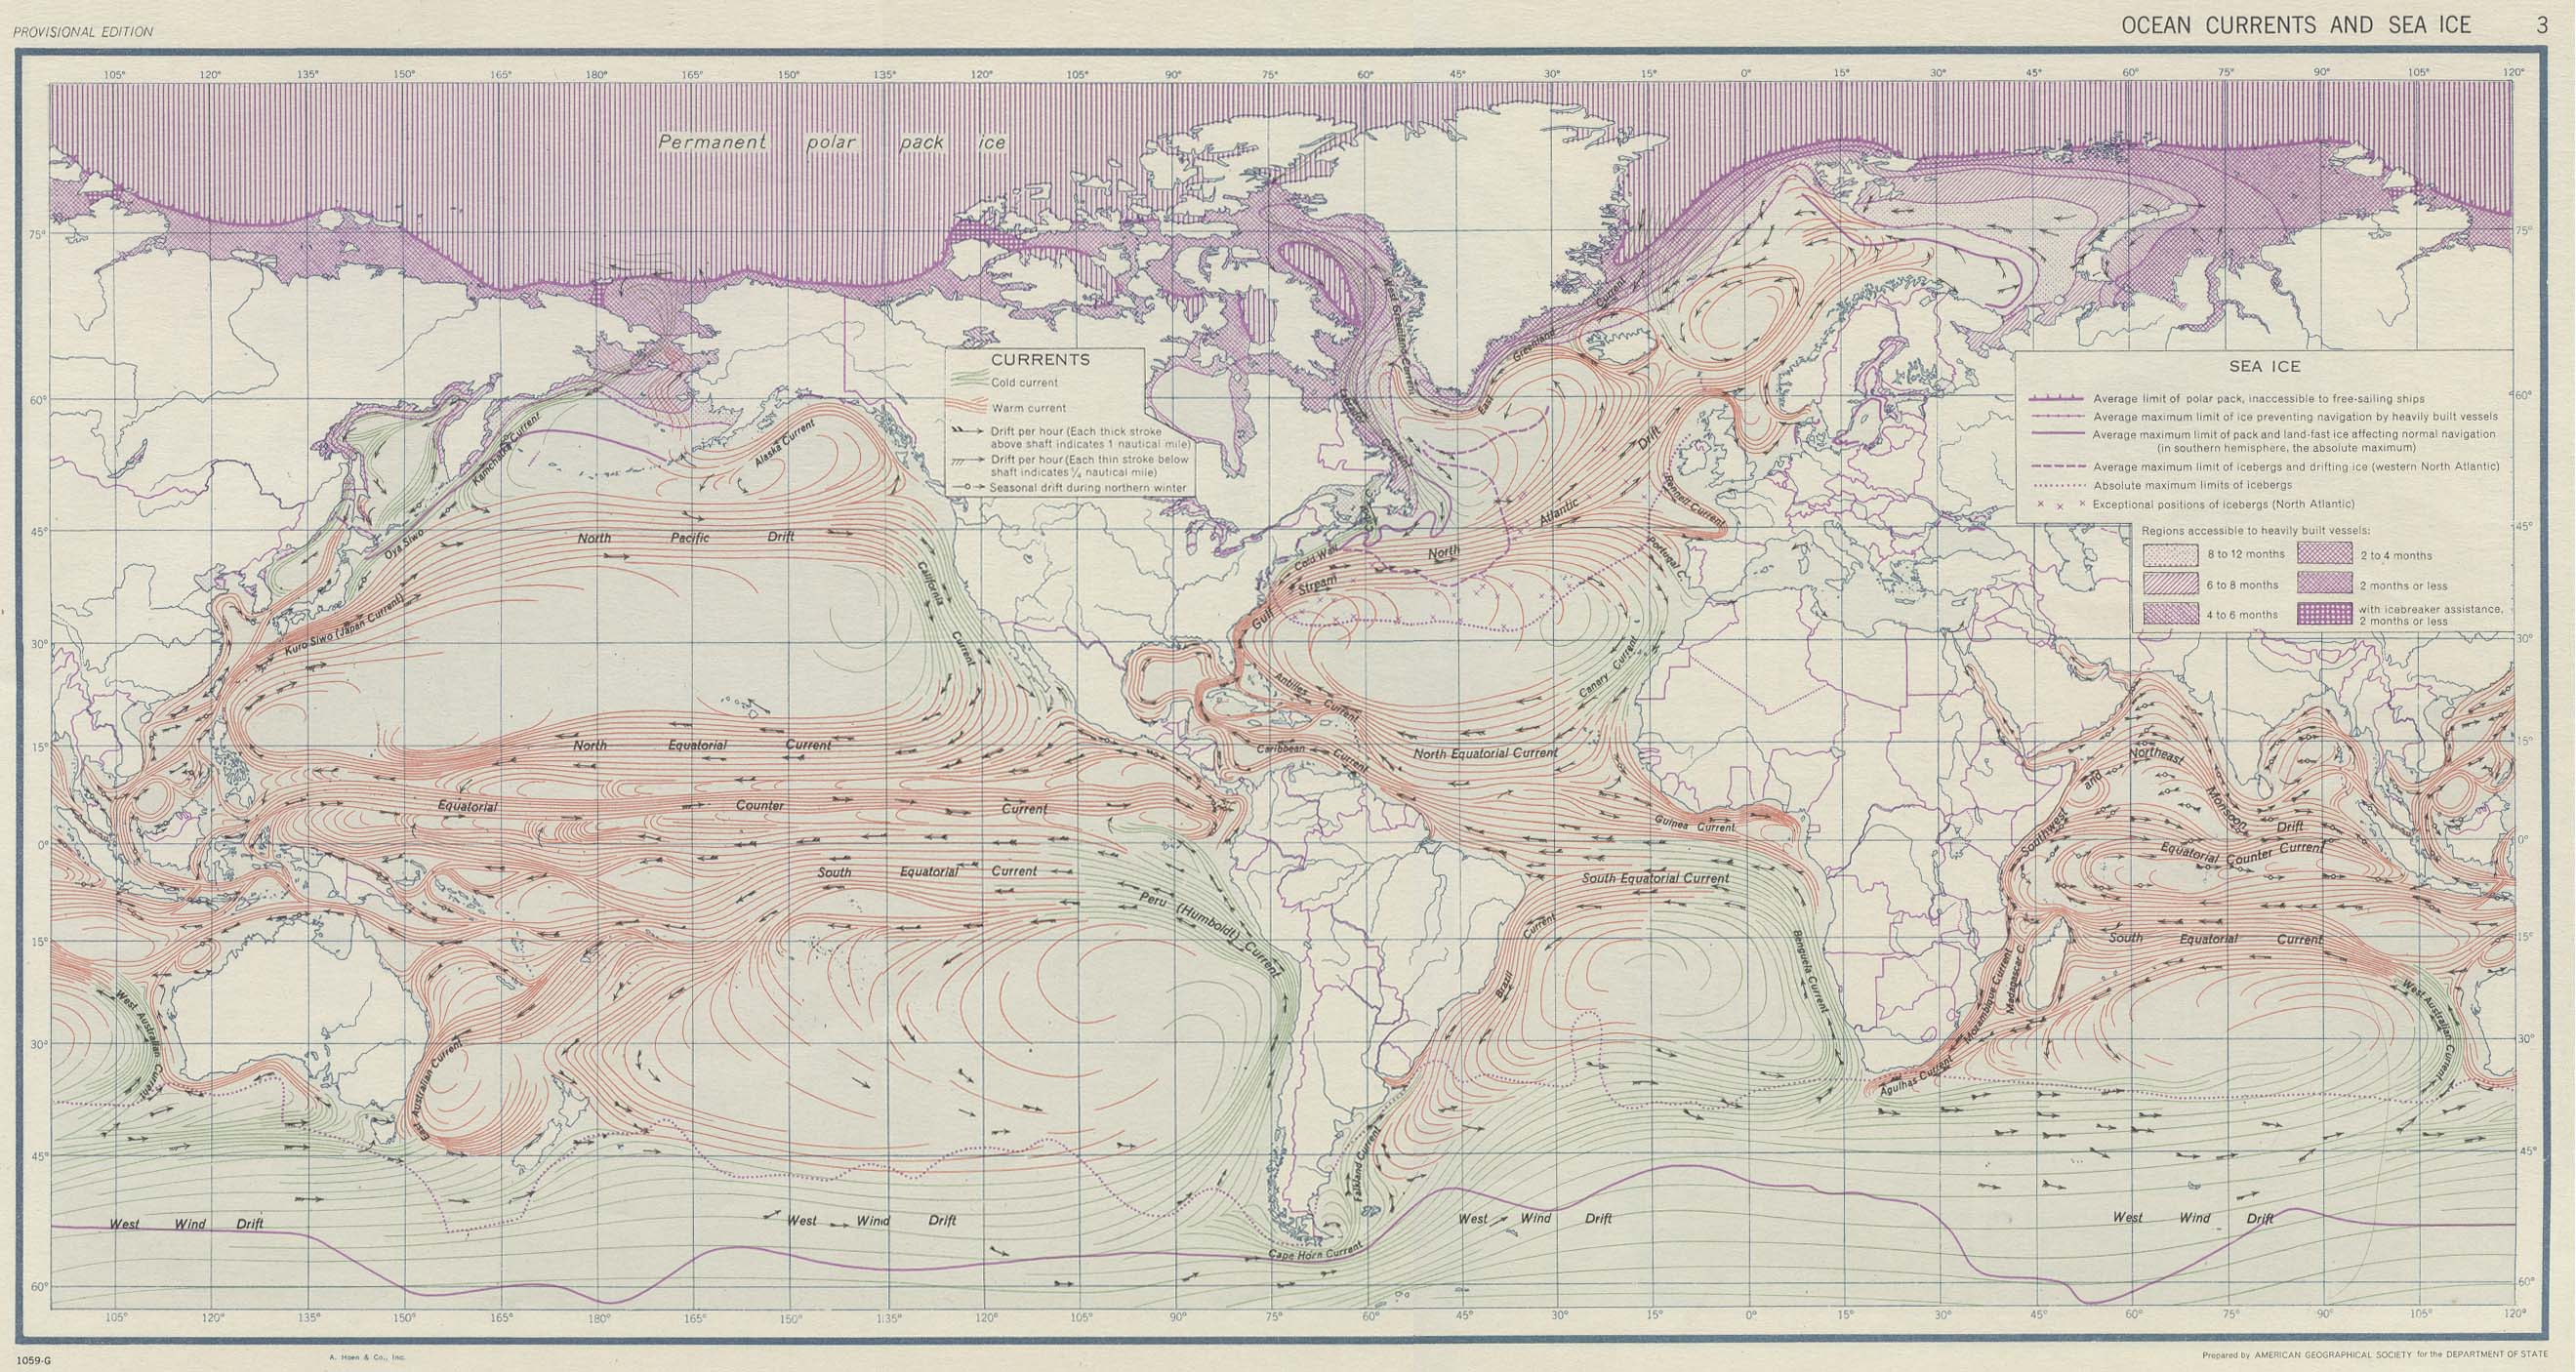 ocean_currents_1943.jpg